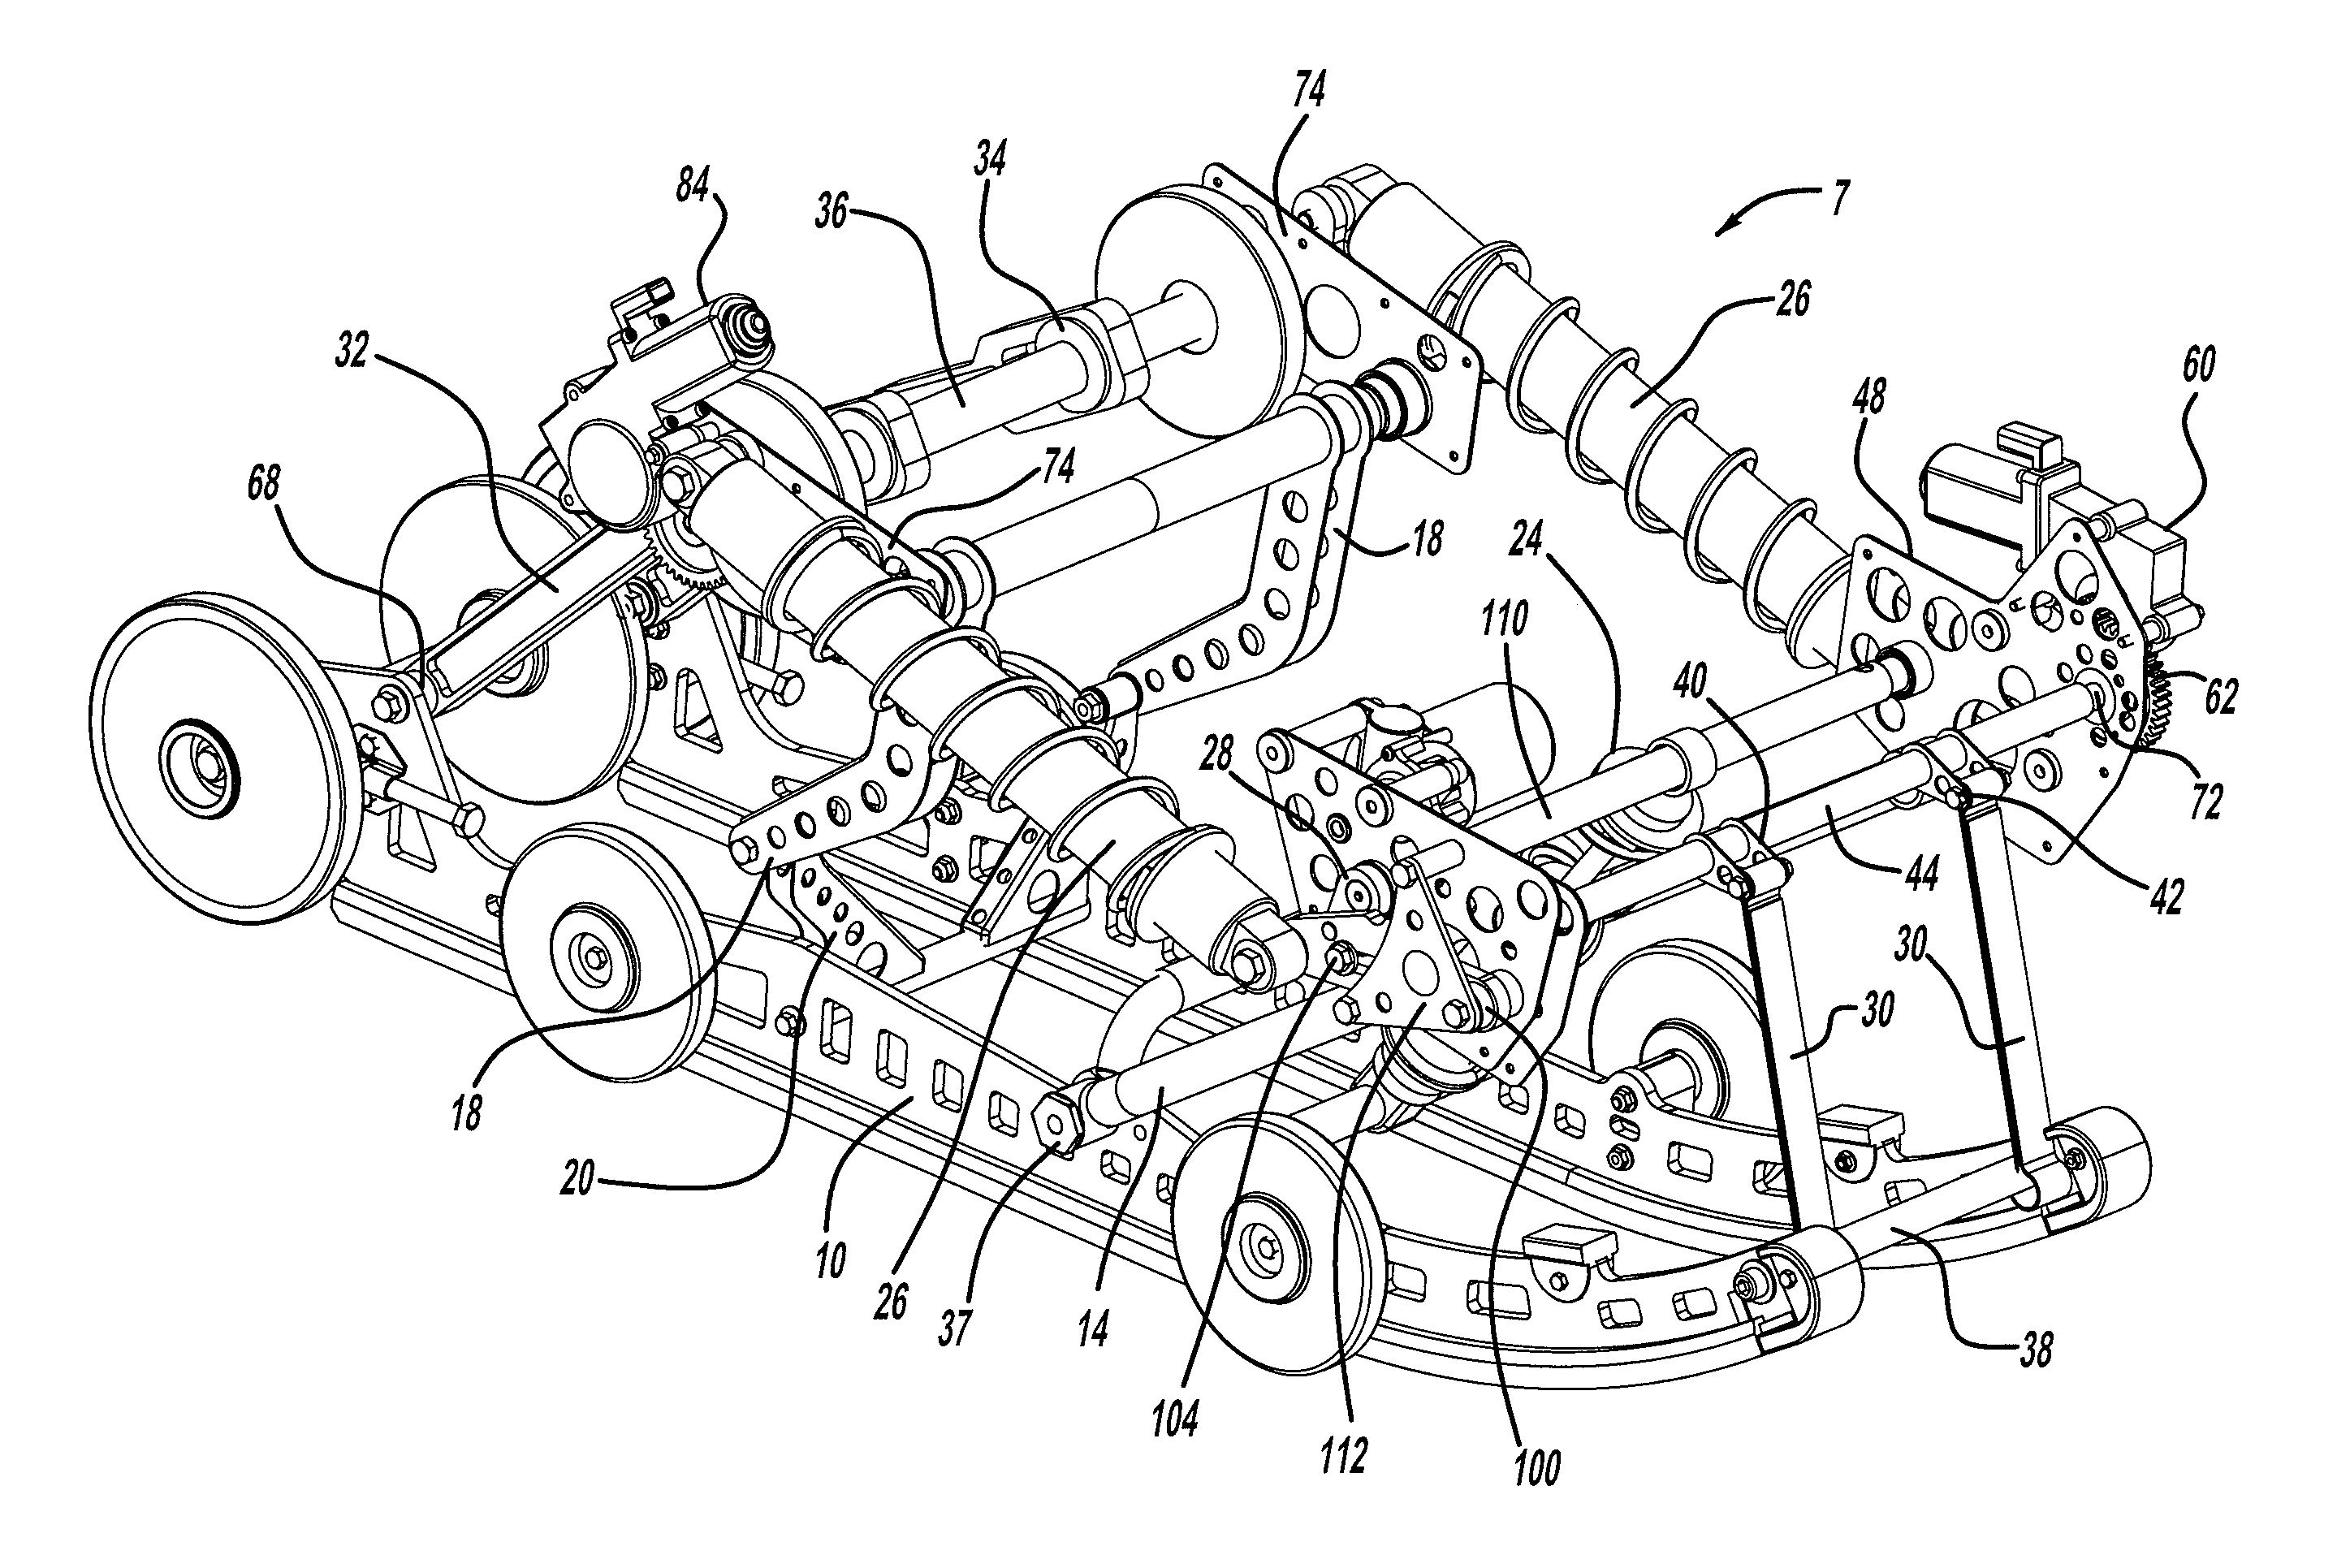 Semi-active snowmobile rear suspension